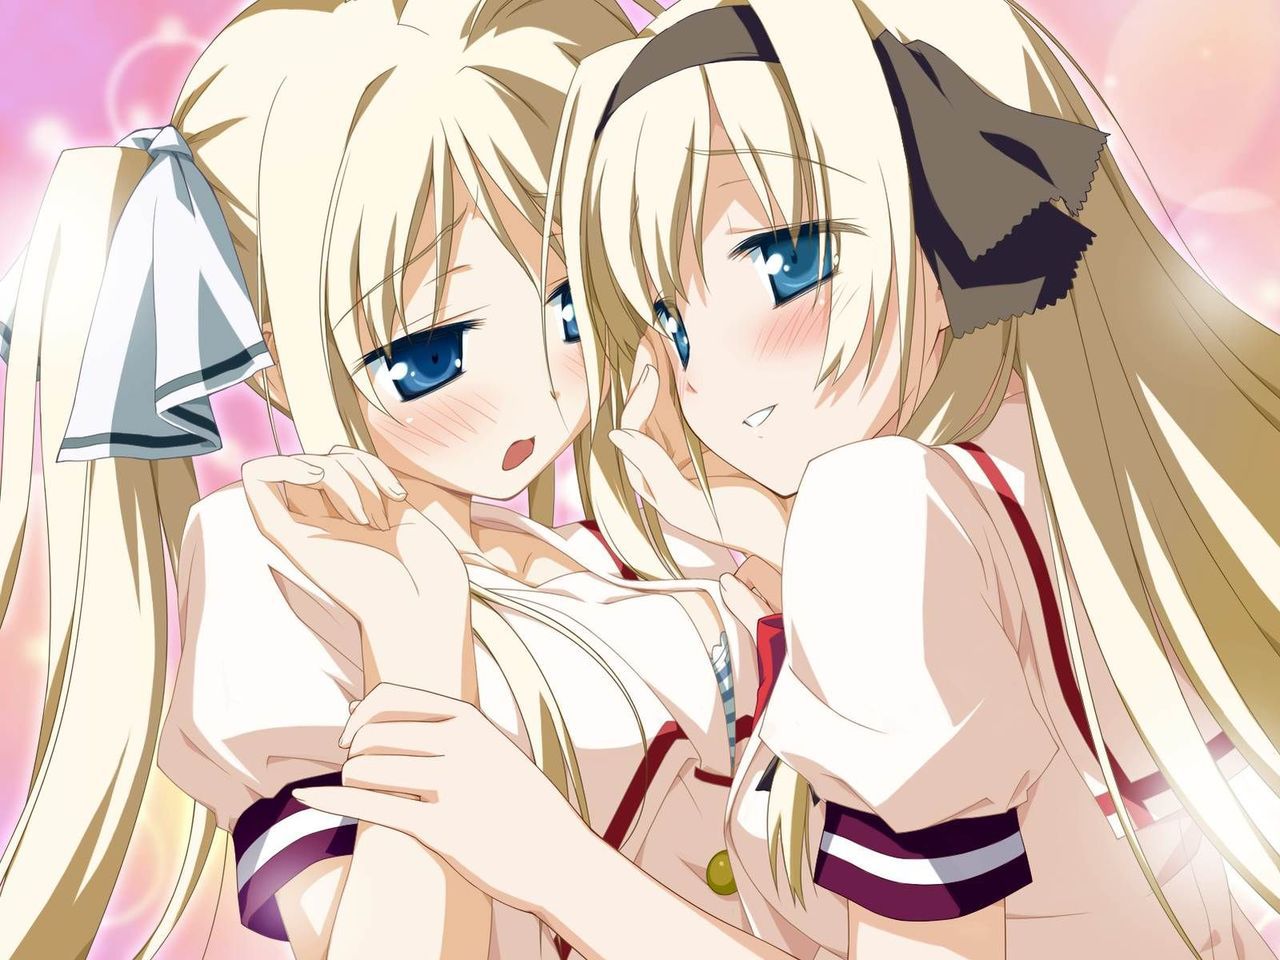 [2次] second image you got out with two girls (Yuri / lesbian) 15